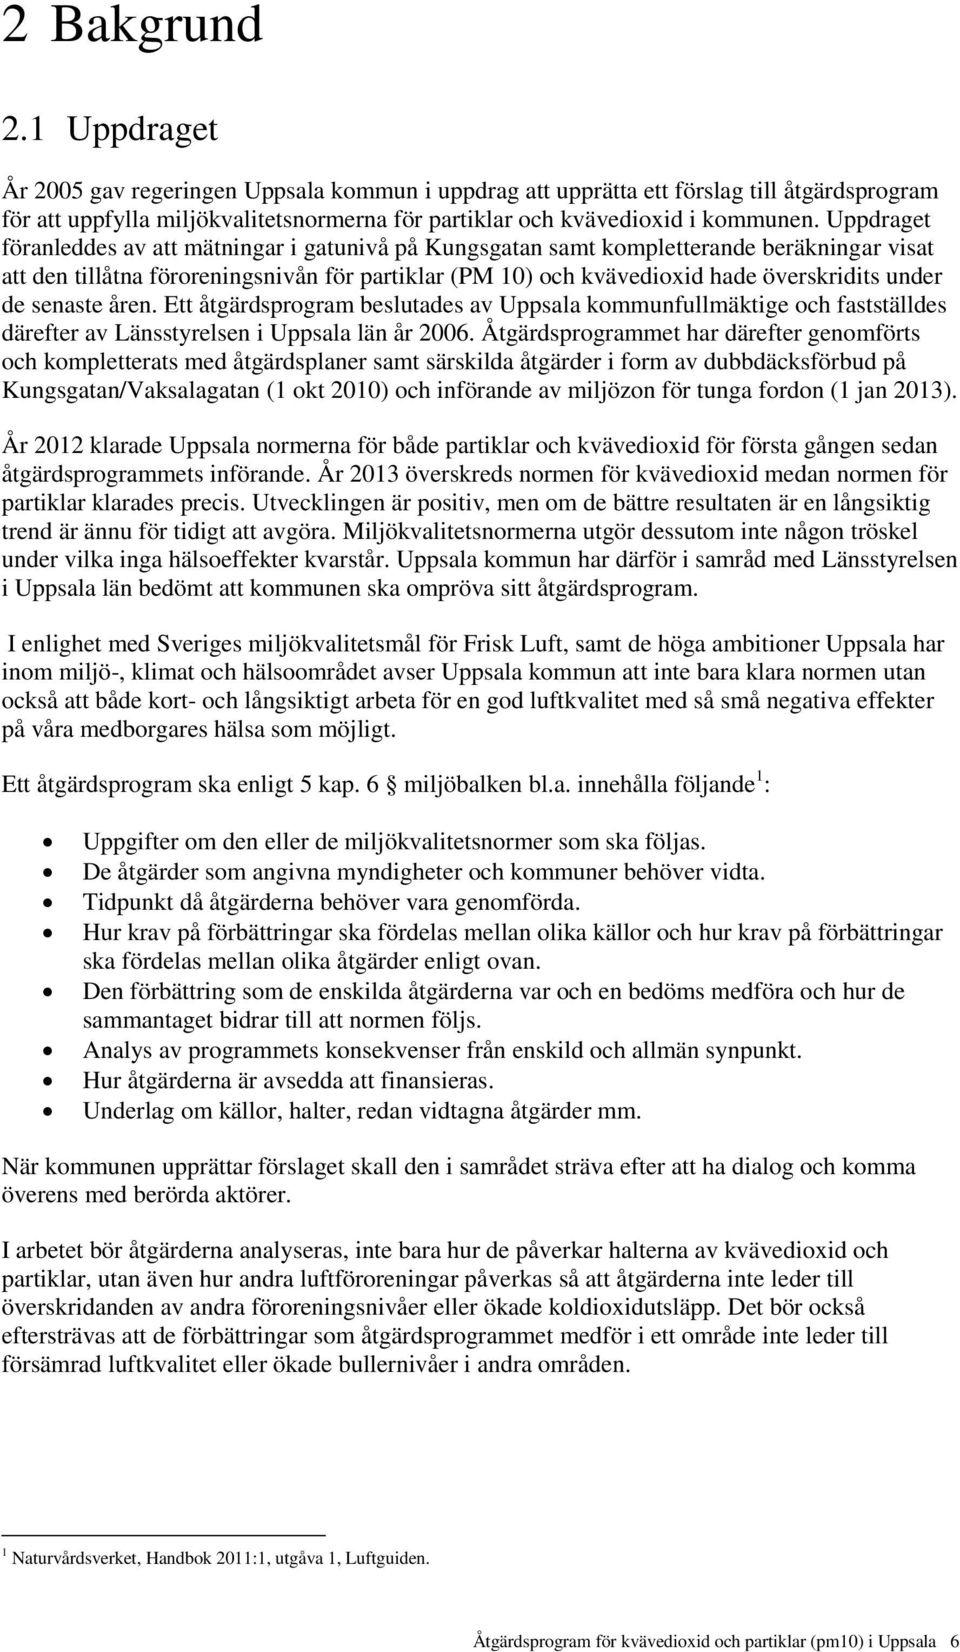 de senaste åren. Ett åtgärdsprogram beslutades av Uppsala kommunfullmäktige och fastställdes därefter av Länsstyrelsen i Uppsala län år 2006.